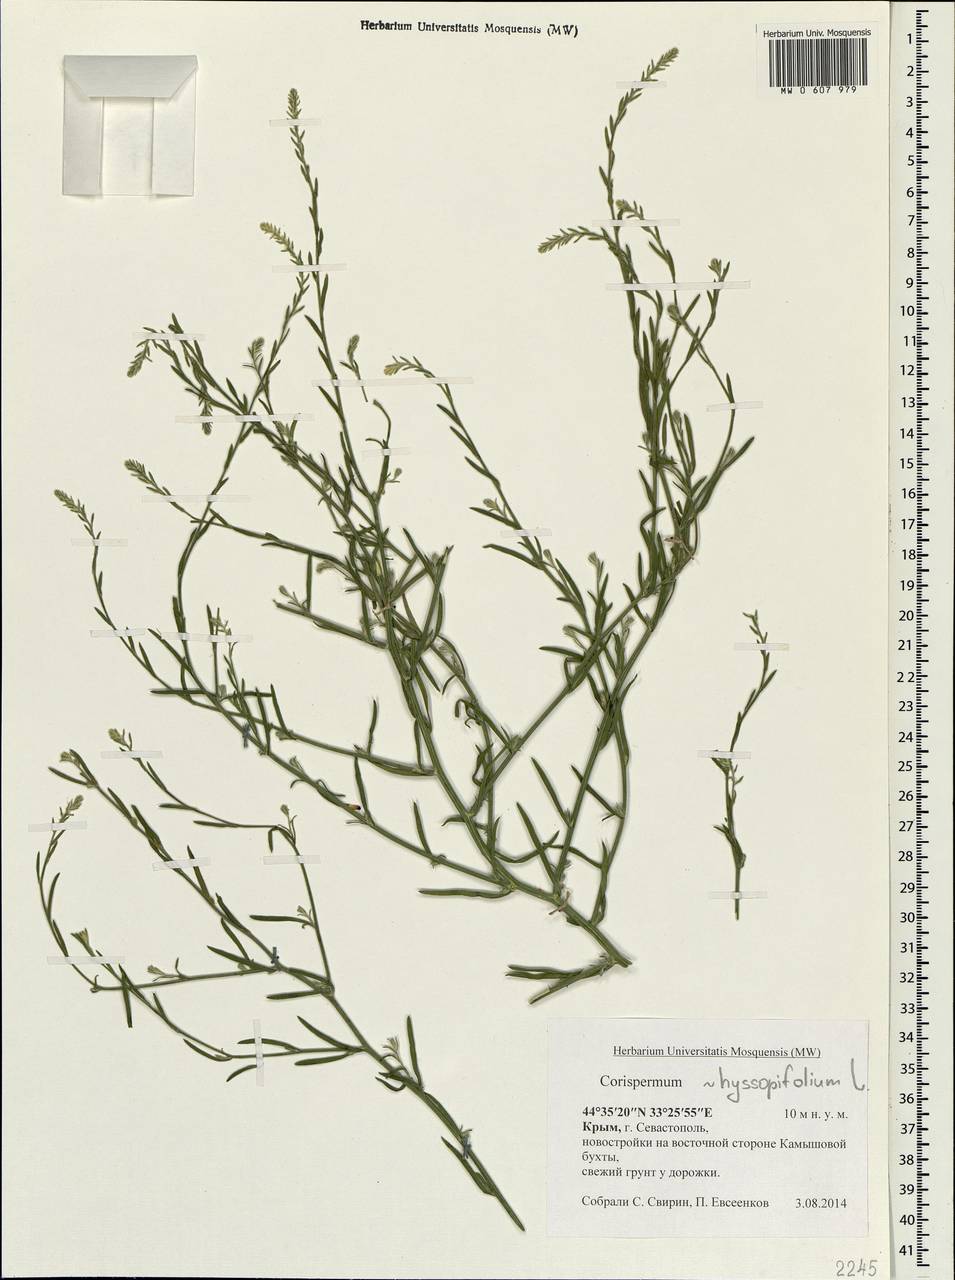 Corispermum hyssopifolium L., Crimea (KRYM) (Russia)